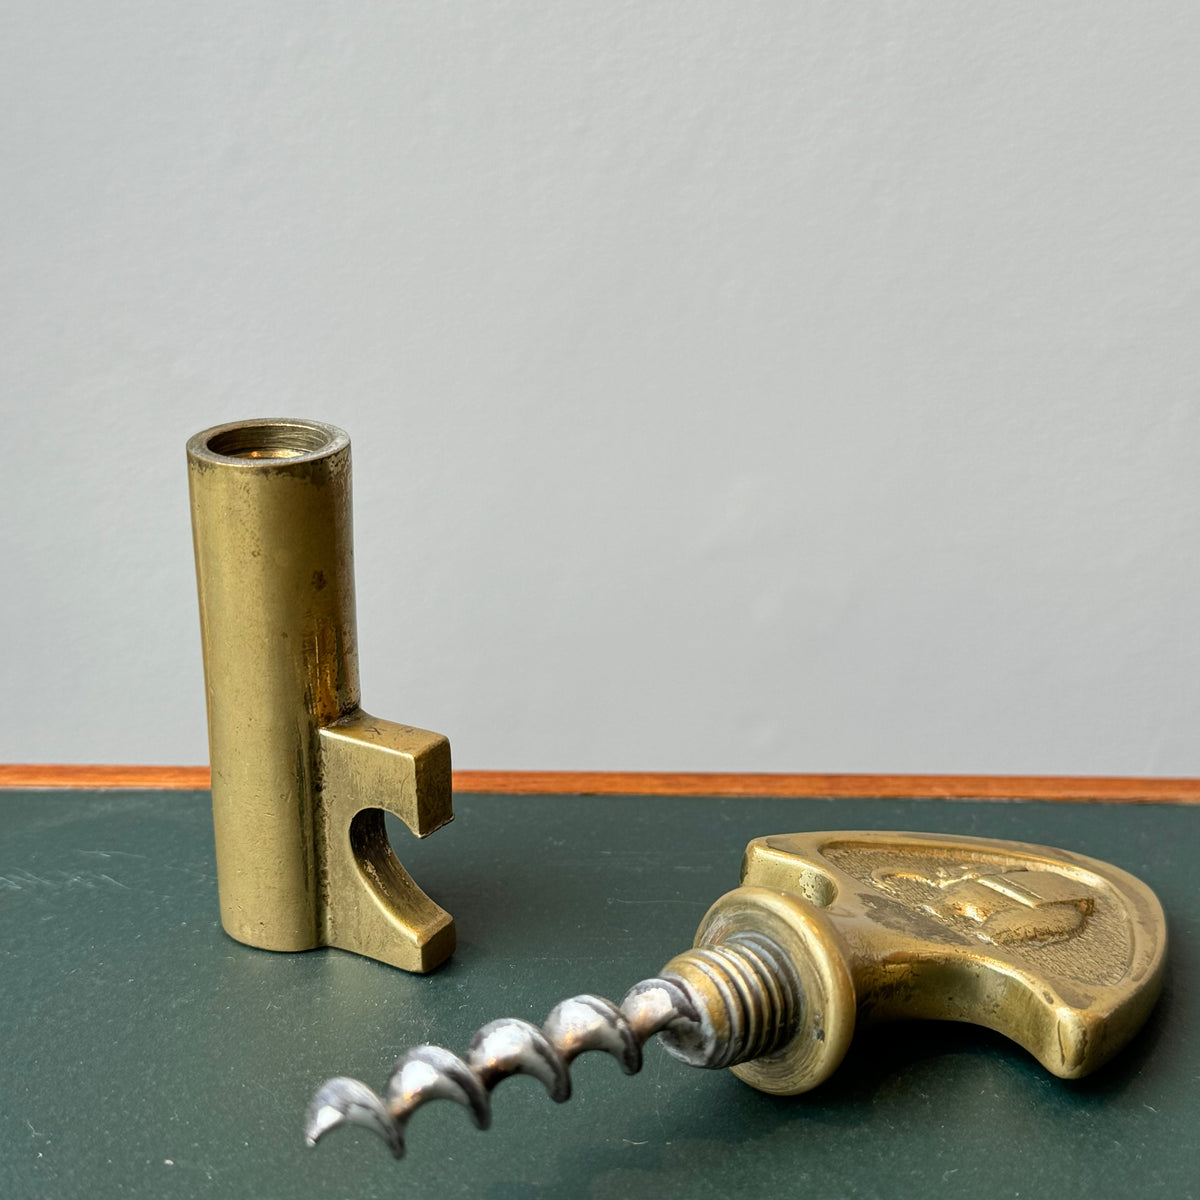 Brass Key Corkscrew / with Elephant / Carl Auböck II